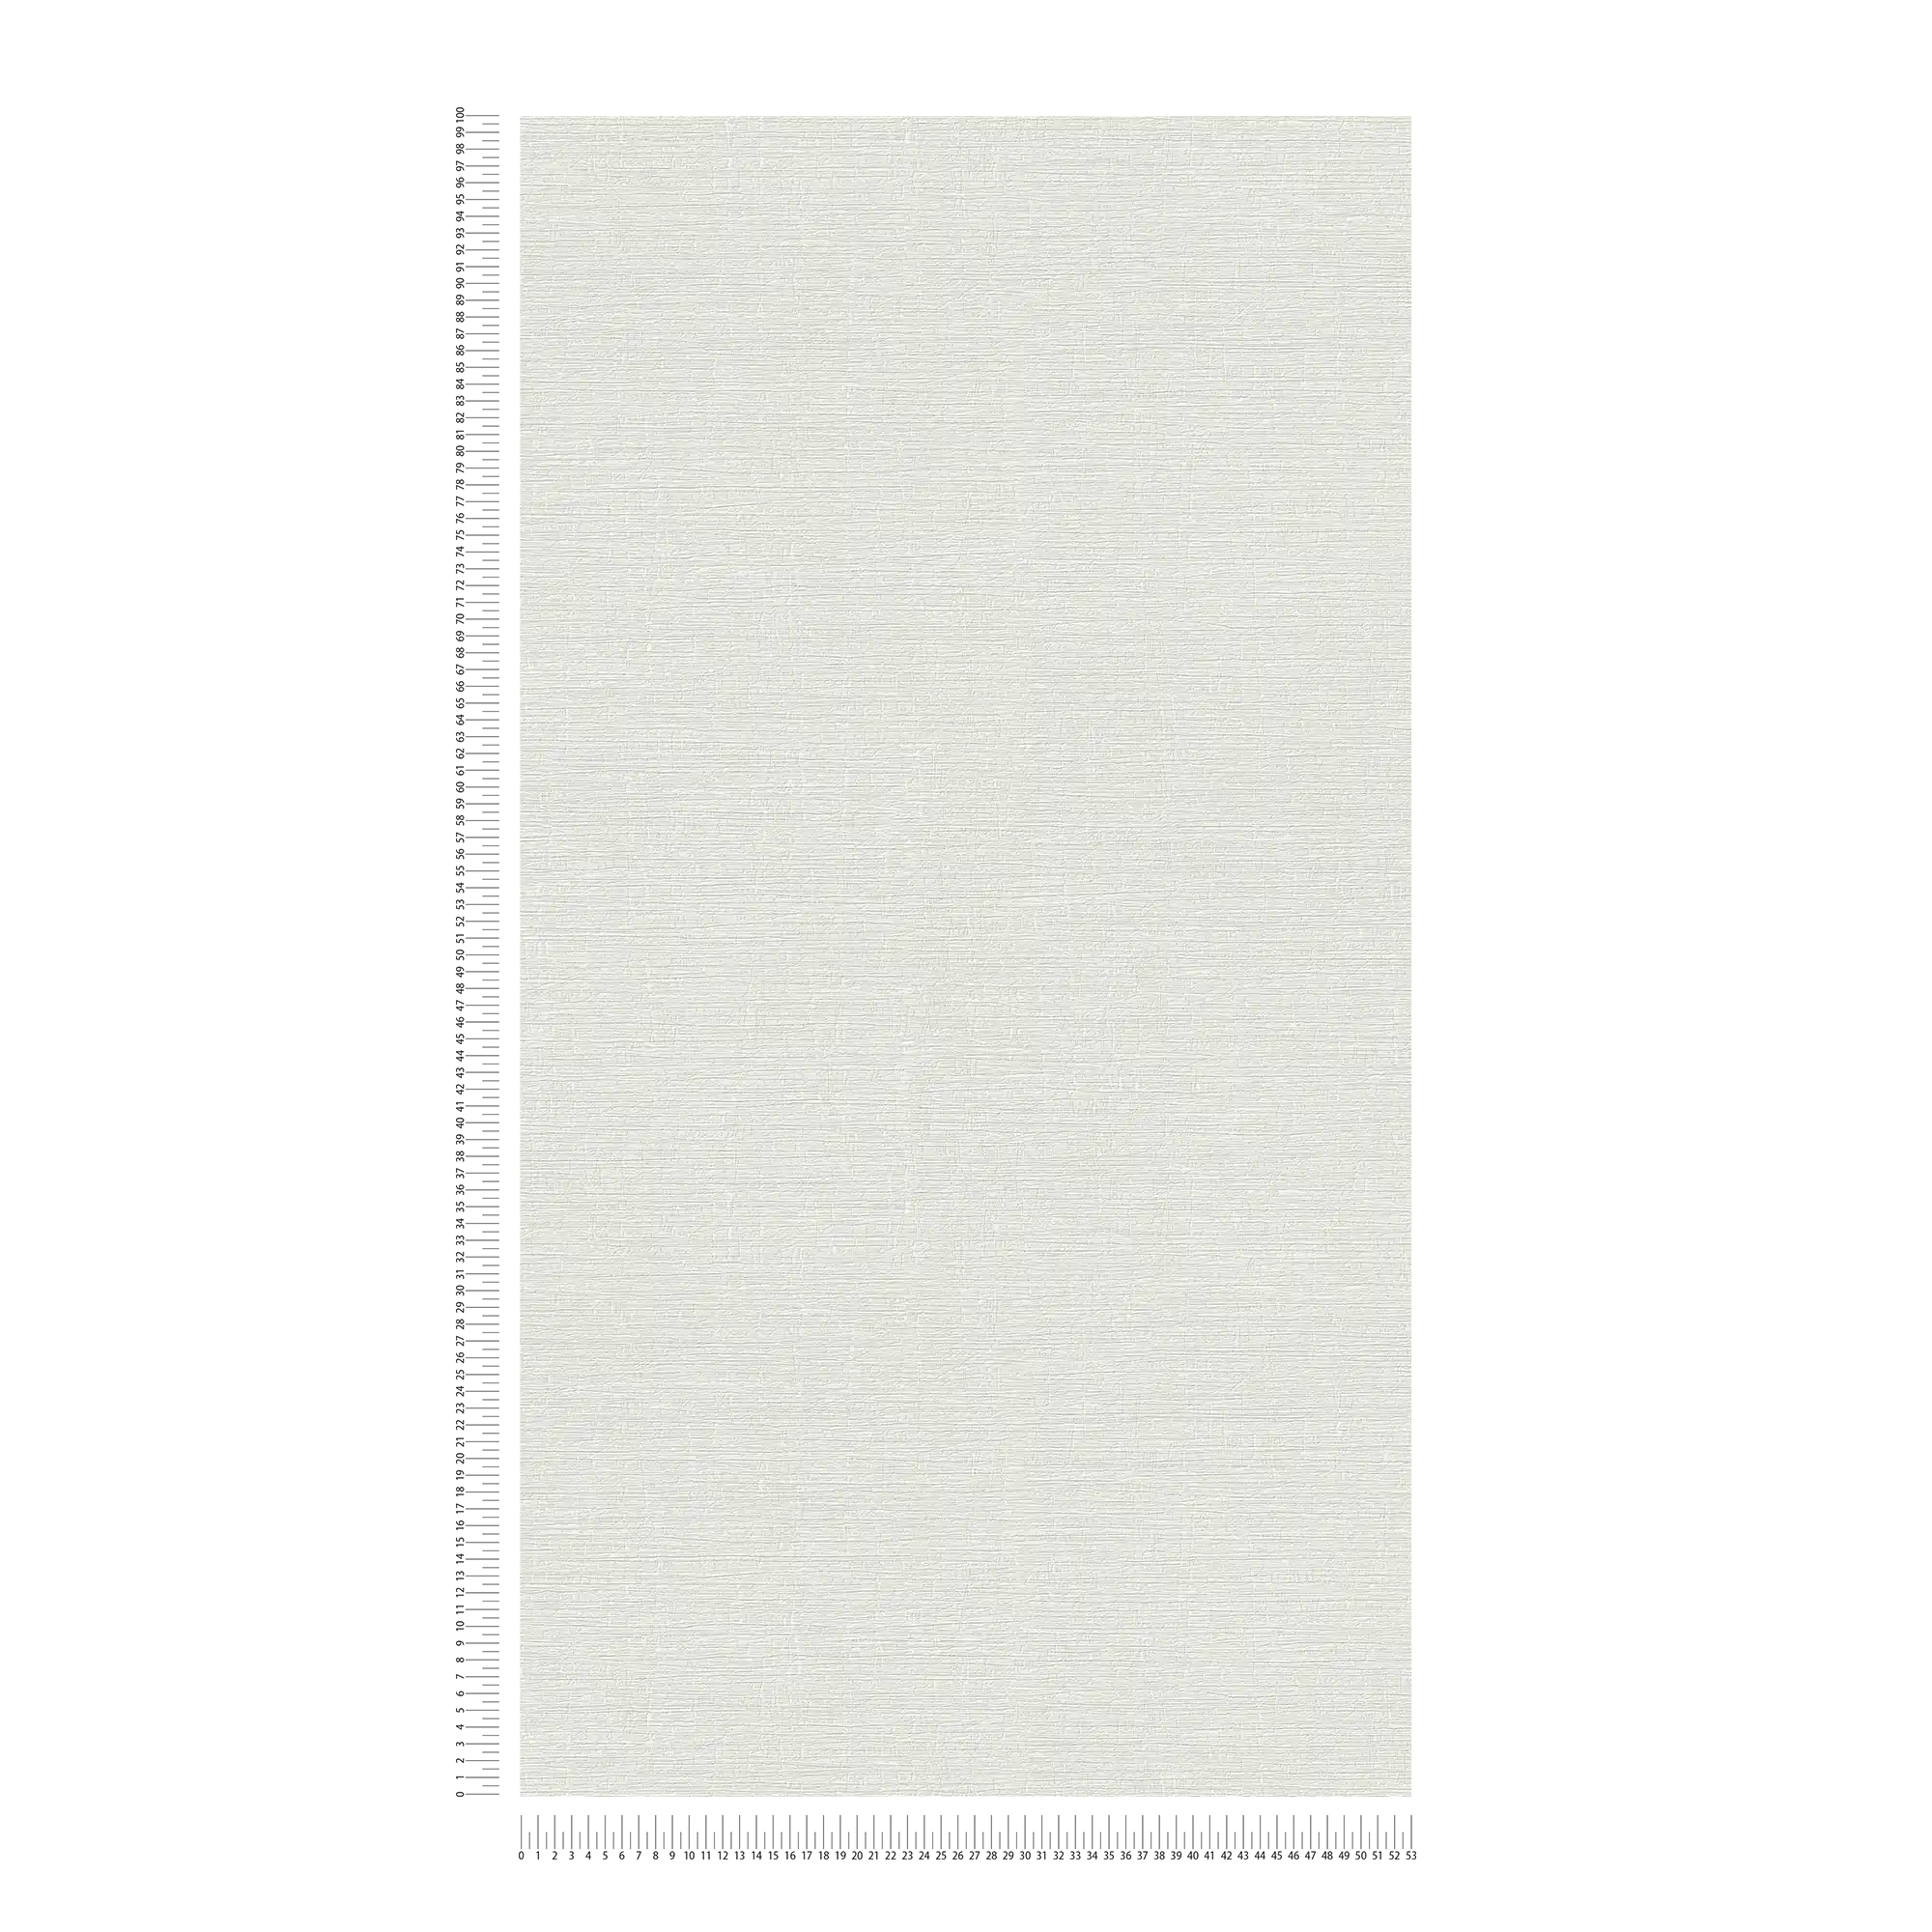             Eenvoudig eenheidsbehang met een lichte textuur - grijs
        